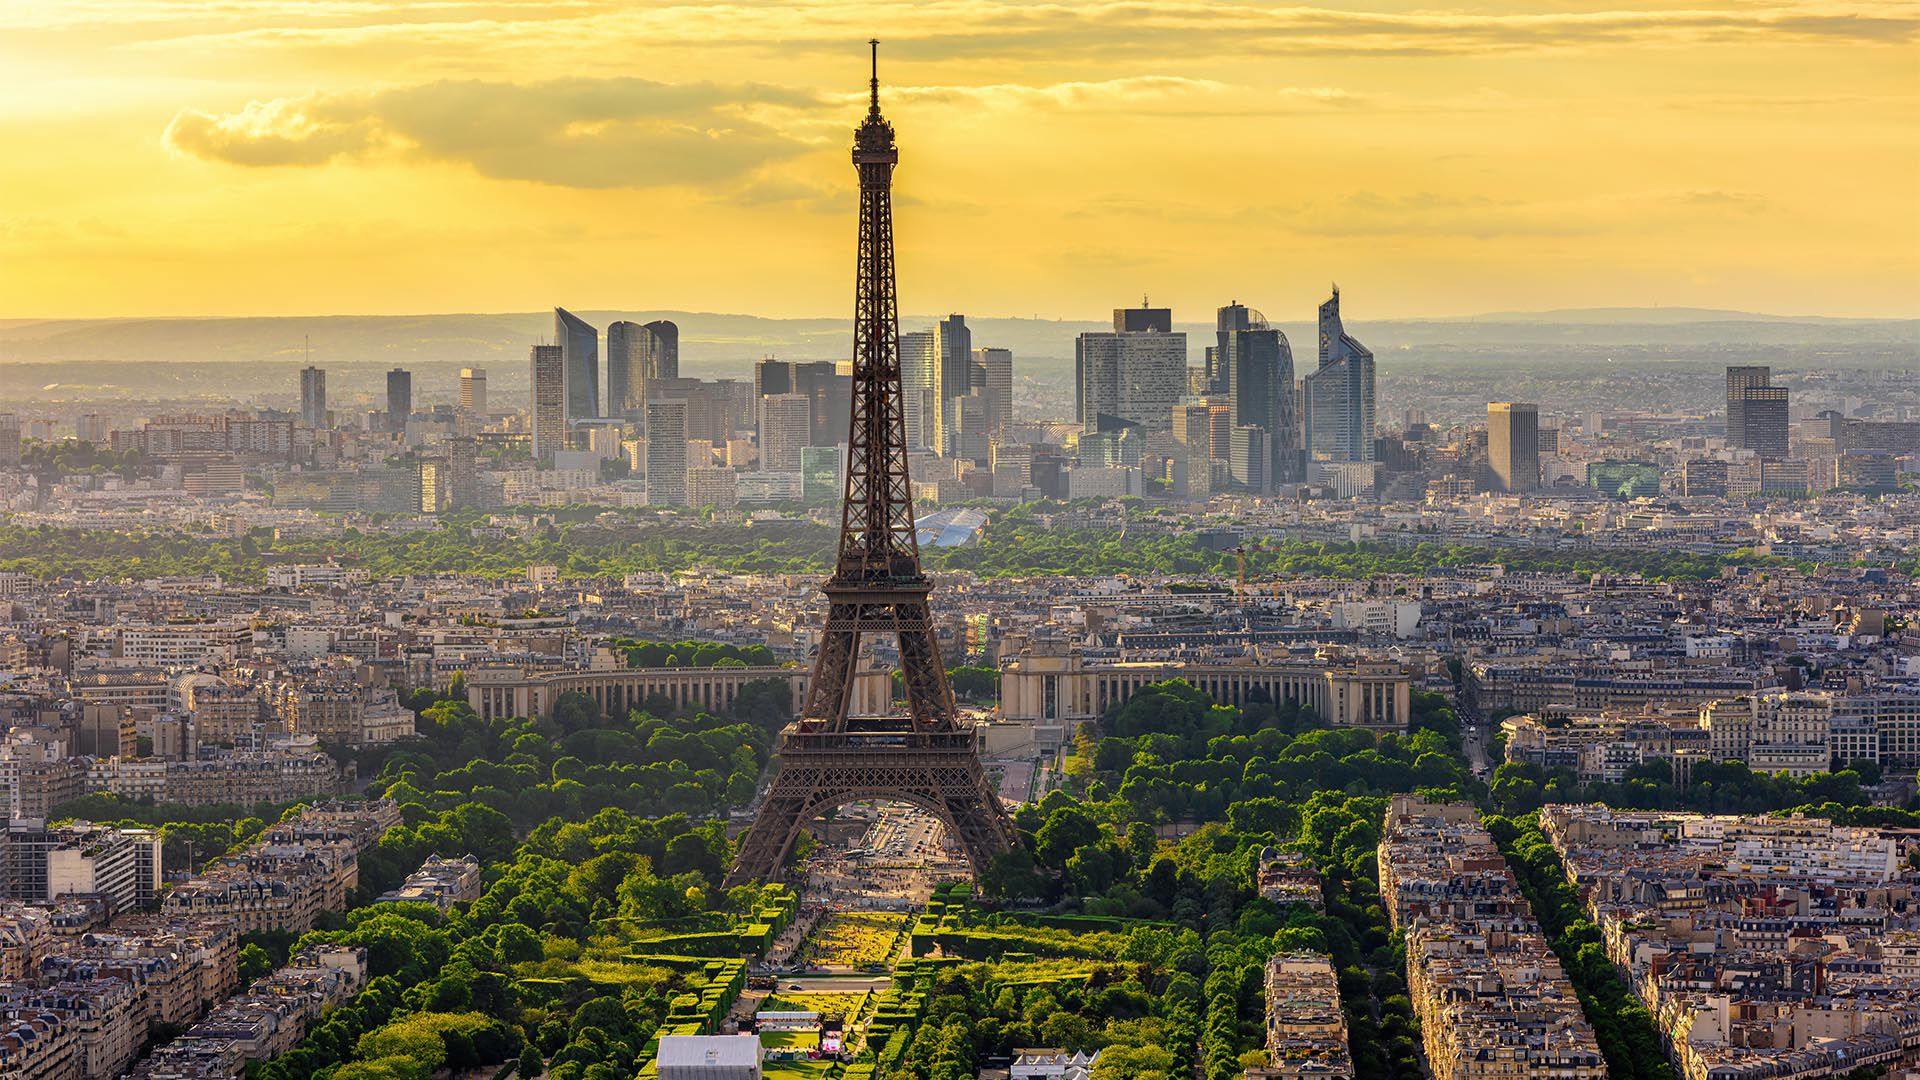 París es estadísticamente una de las principales áreas metropolitanas más seguras de Europa. Las tasas de delitos violentos son bastante bajas, aunque algunos delitos, incluidos los carteristas, son bastante frecuentes